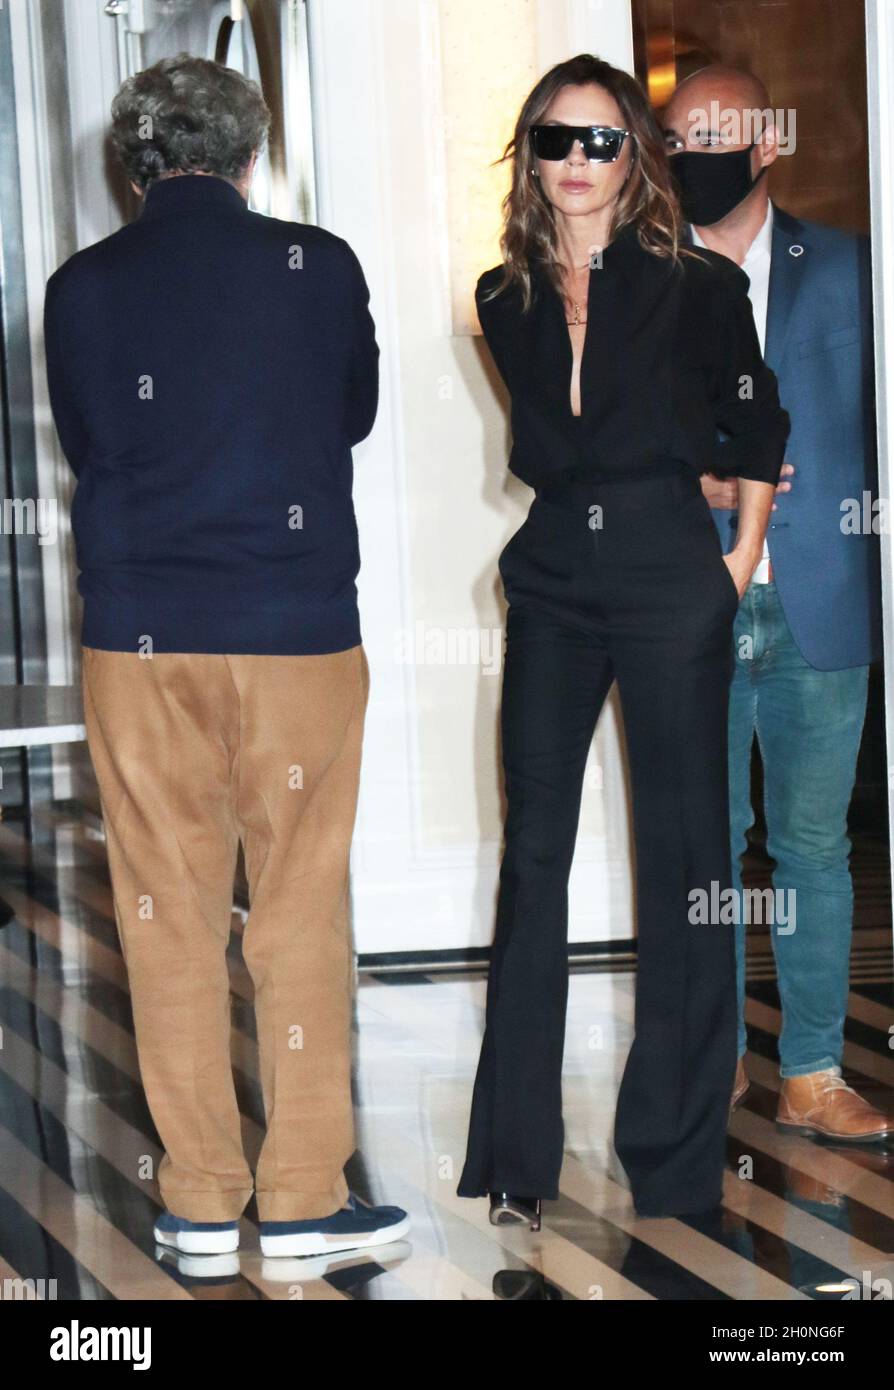 New York, NY, États-Unis.13 octobre 2021.Victoria Beckham vu sur son chemin  vers la fin de la nuit avec Jimmy Fallon à New York City le 13 octobre 2021.Crédit  : RW/Media Punch/Alamy Live